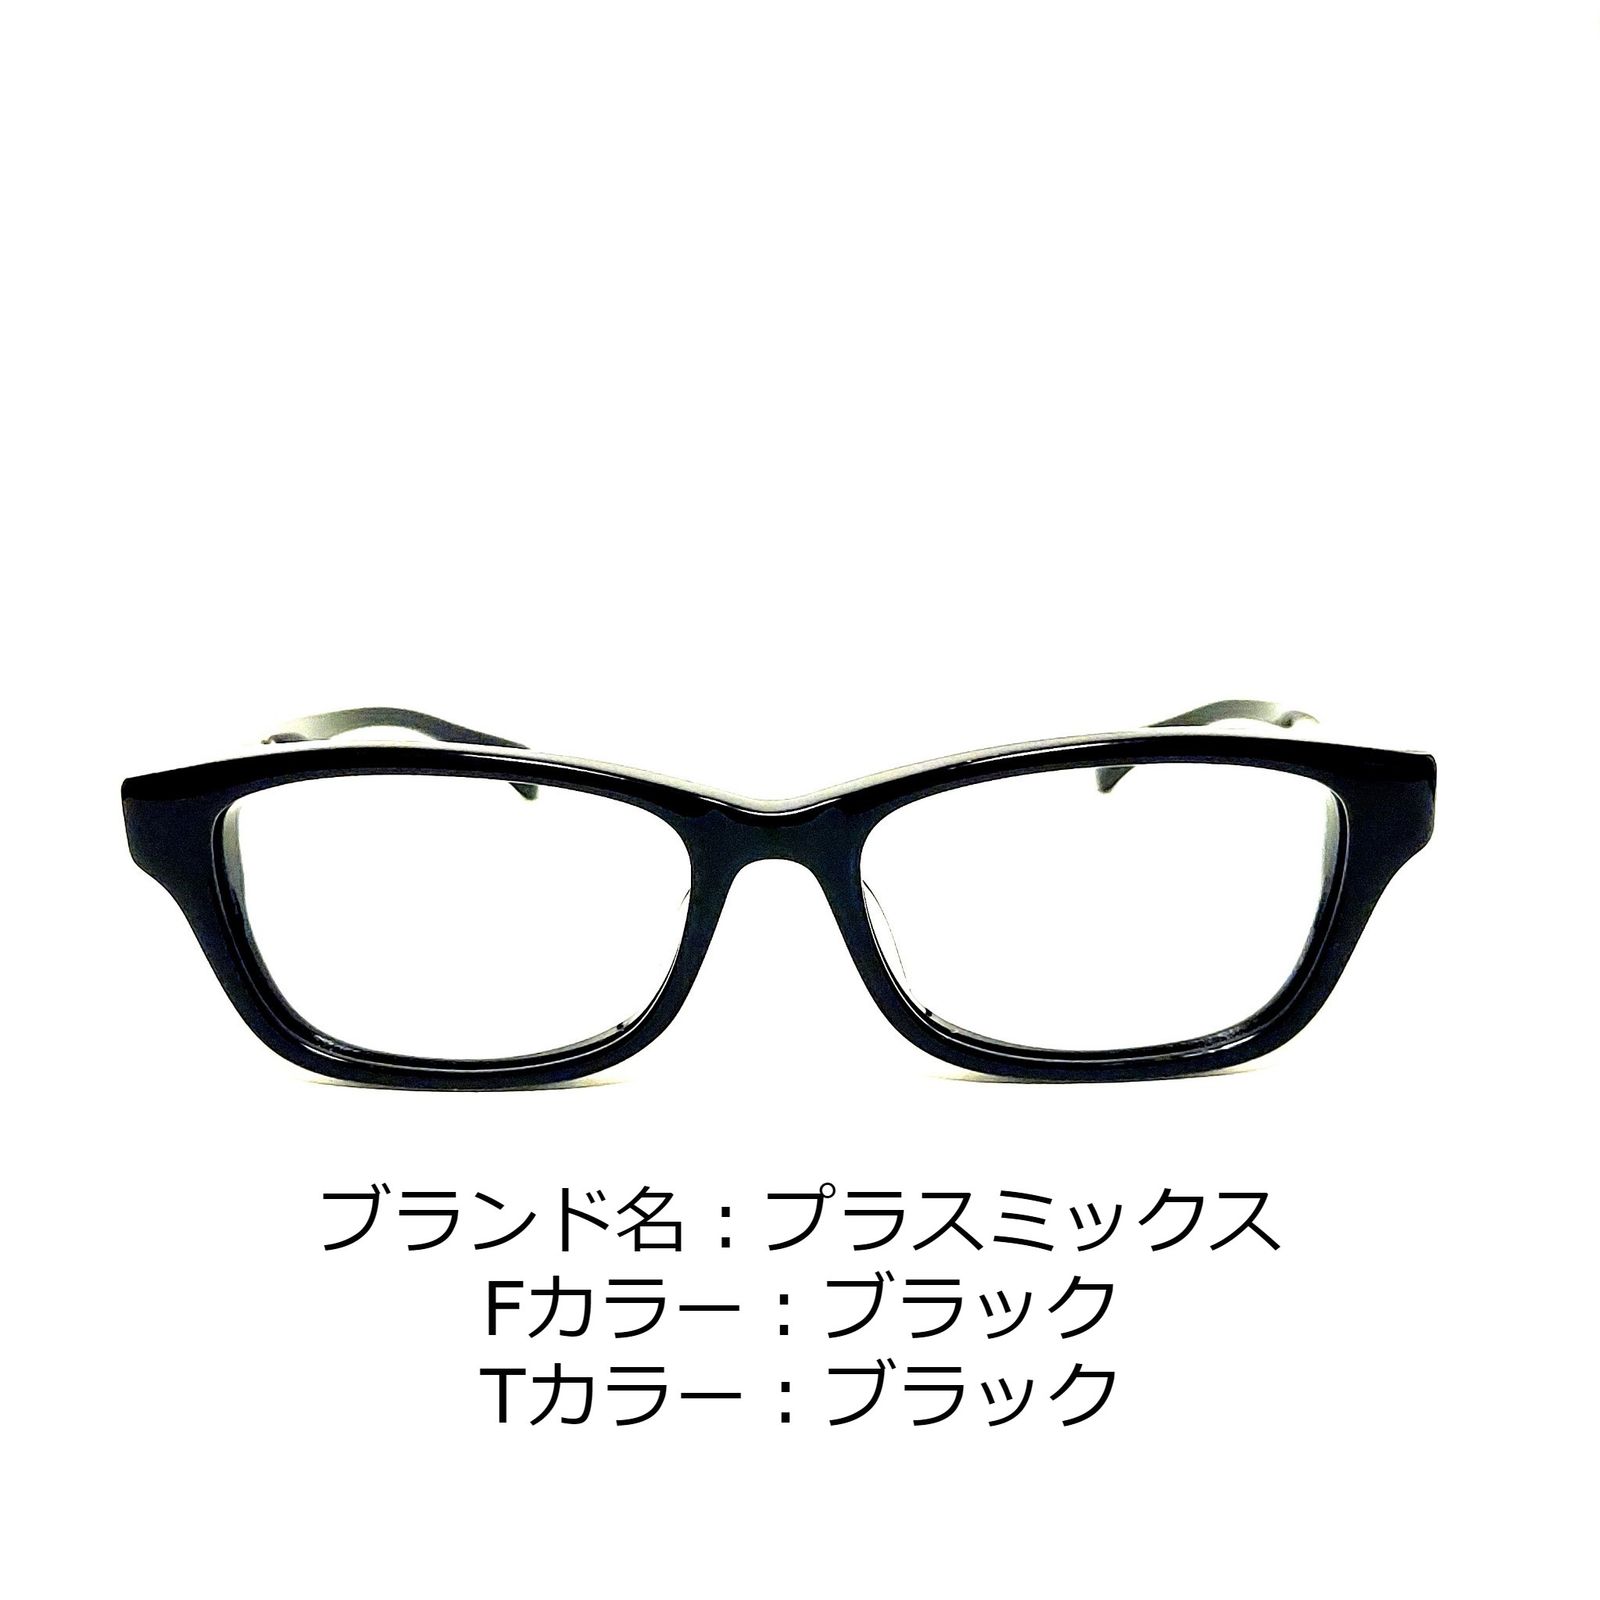 No.1366-メガネ プラスミックス【フレームのみ価格】 - スッキリ生活